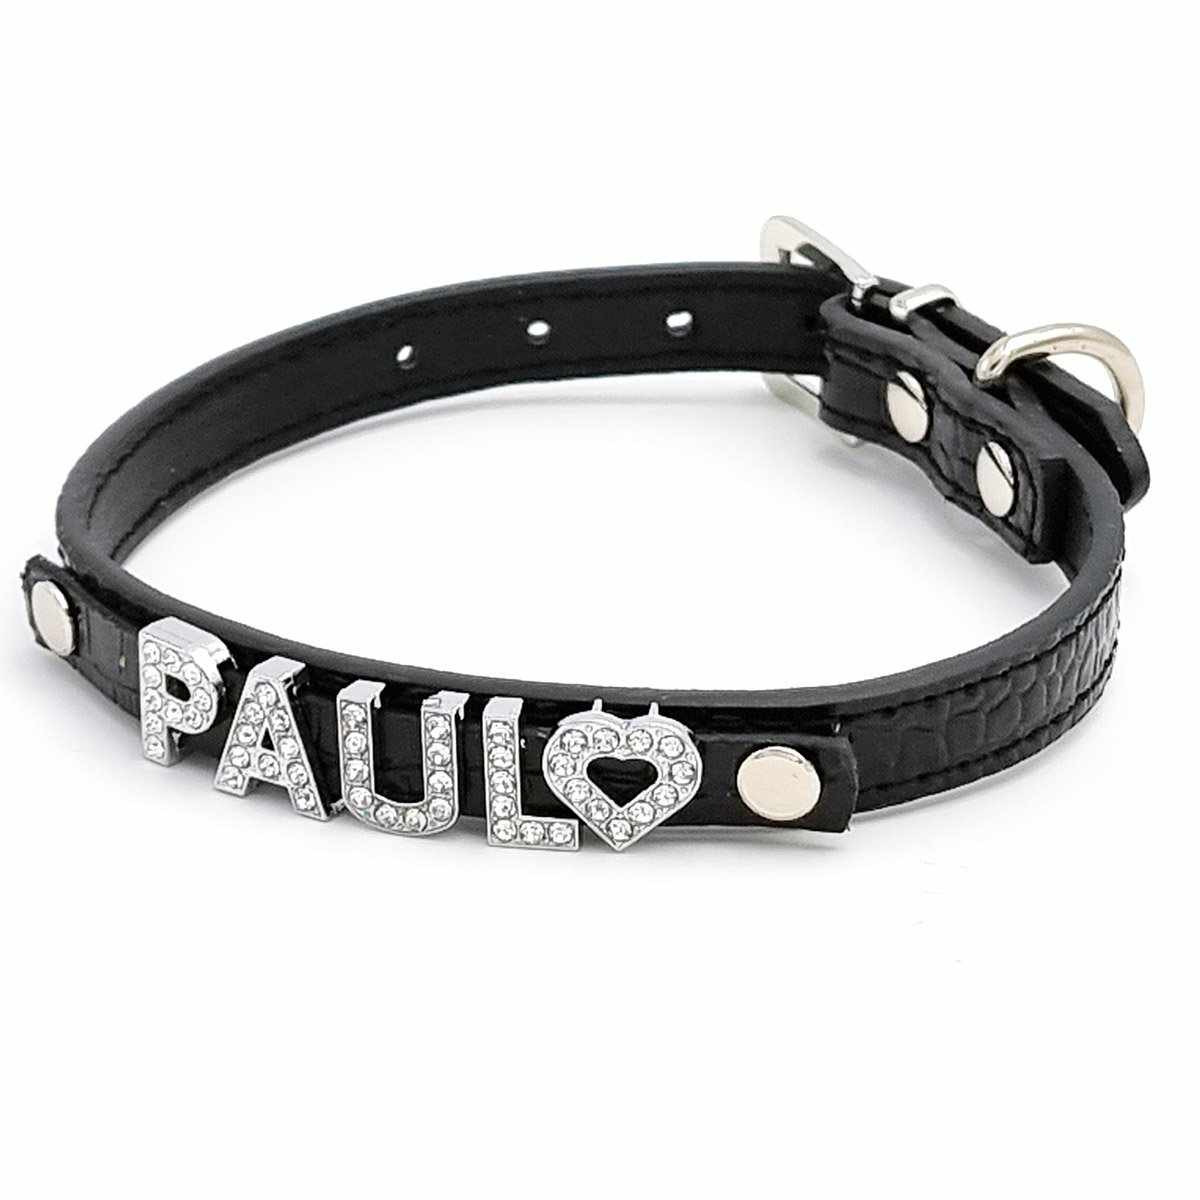 Cooles Kroko Hundehalsband personalisiert mit Glitzersteinen + Symbol